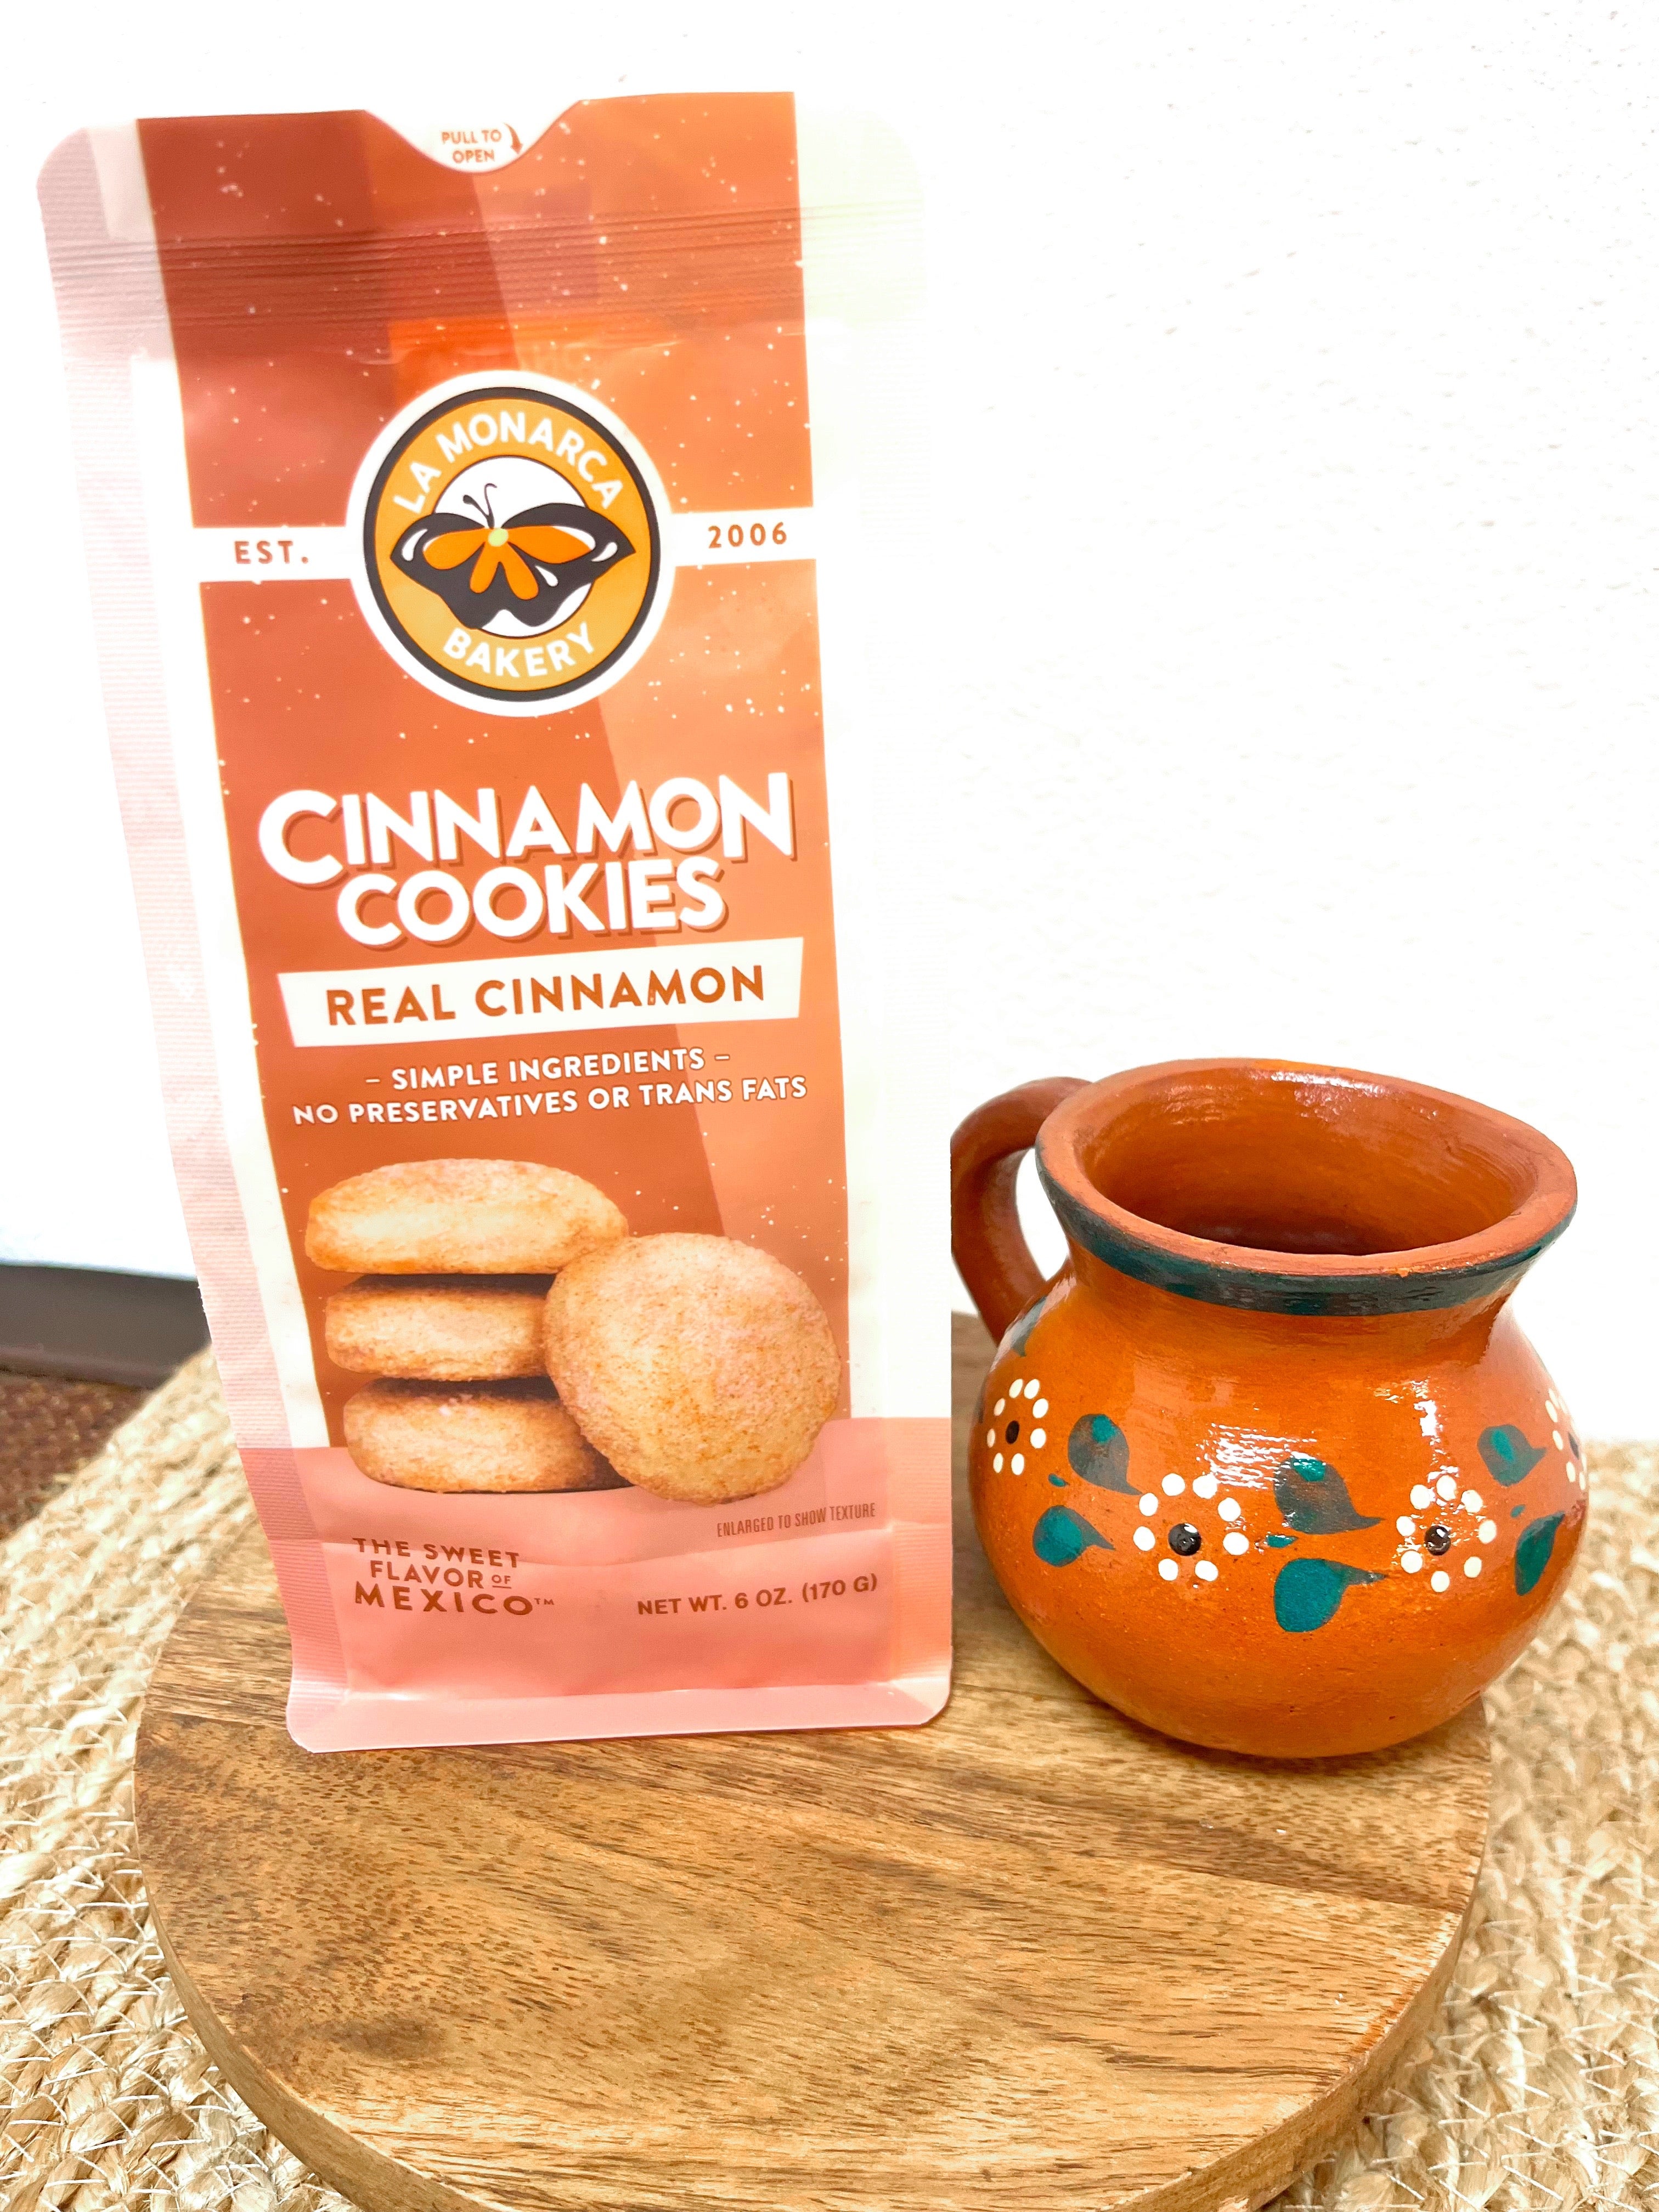 Cafe de Olla Mexican Coffee with Cinnamon & Brown Sugar– La Monarca Bakery